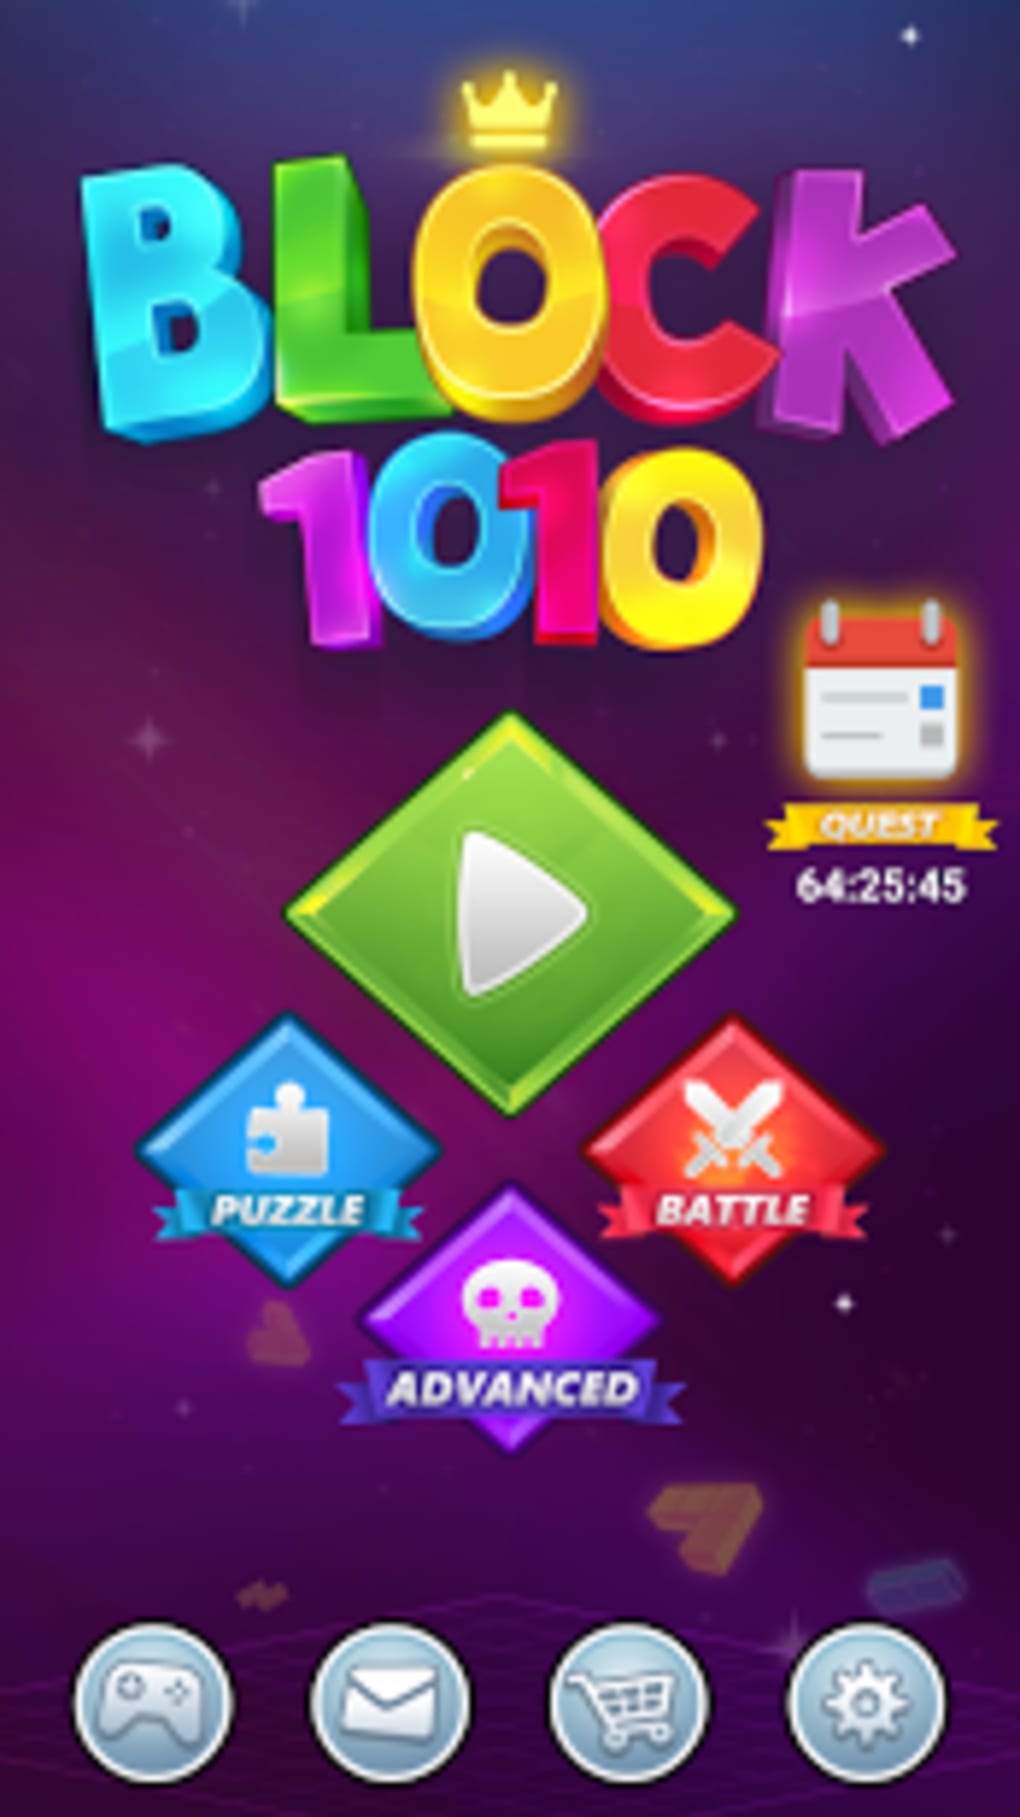 1010! Puzzle Online - Jogo Gratuito Online